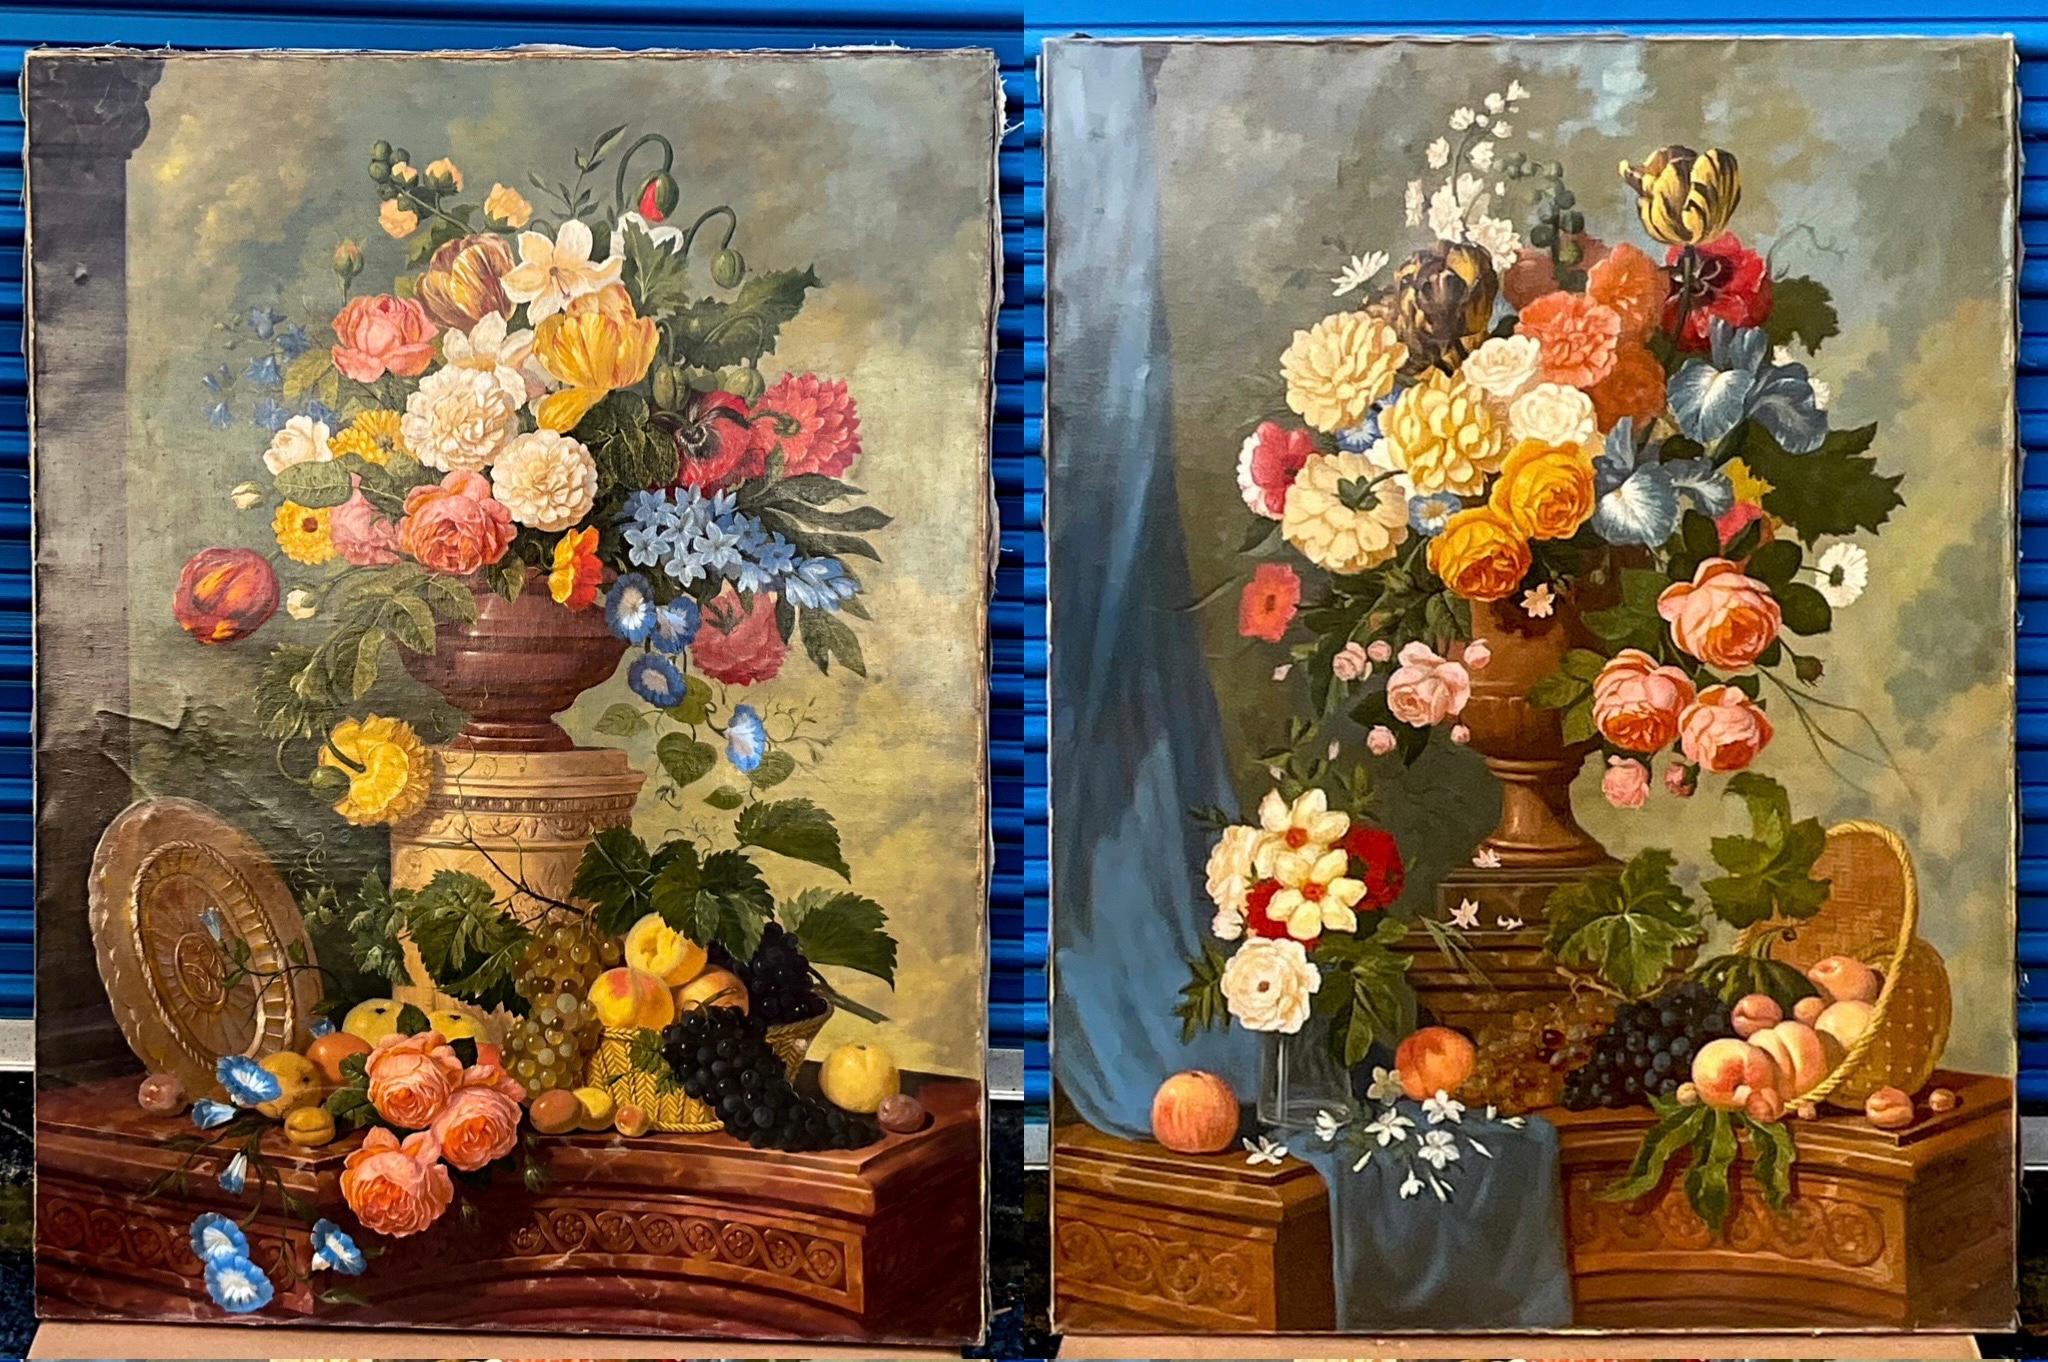 Ces fleurs françaises du XIXe siècle à grande échelle sont à couper le souffle. Les ensembles se complètent parfaitement. Les deux bouquets présentent des éléments néo-classiques avec les urnes et les piédestaux. La grande échelle aurait un fort